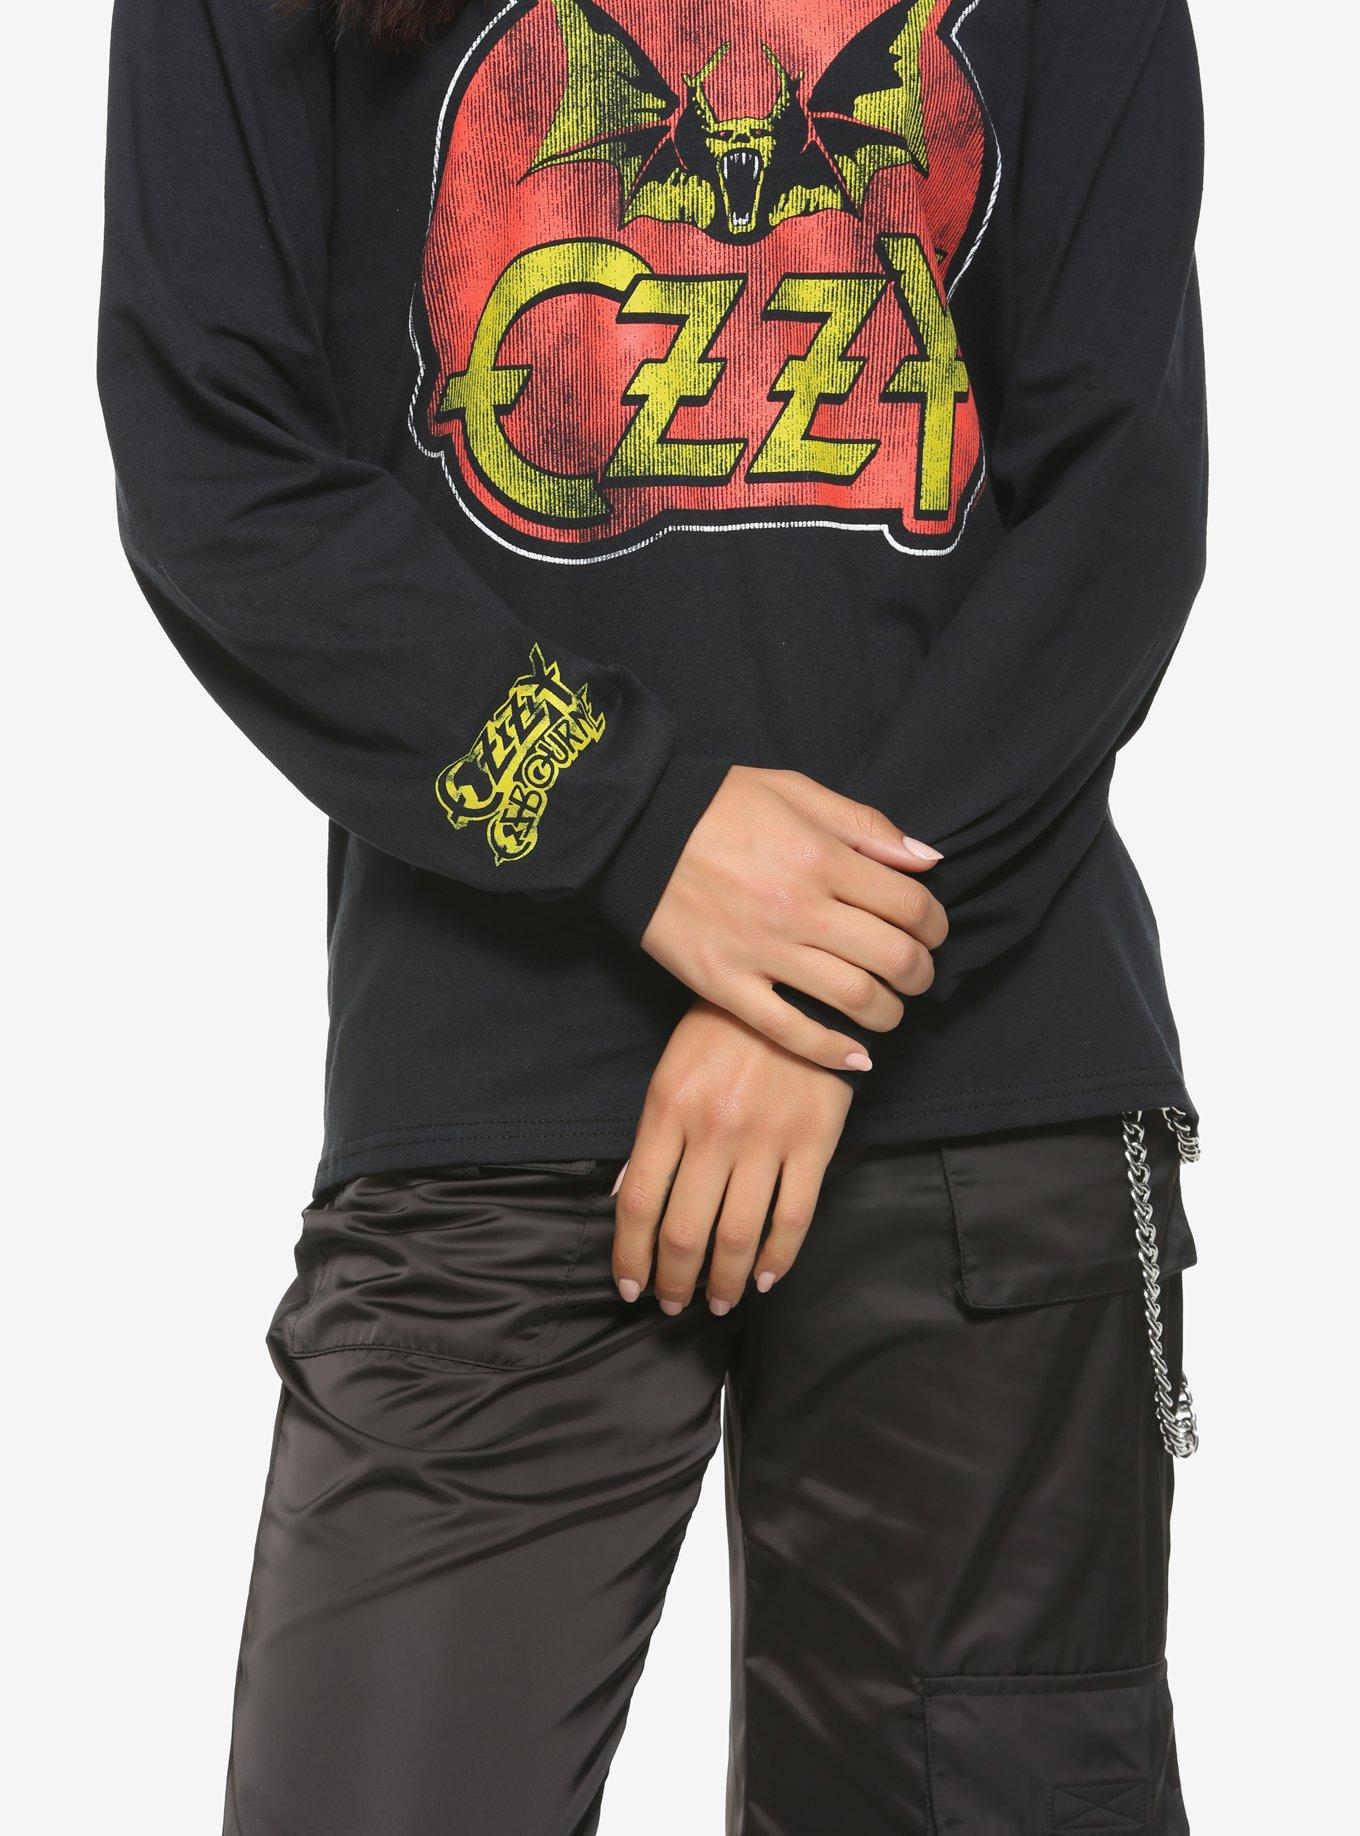 Ozzy Osbourne Bat Logo Girls Long-Sleeve T-Shirt, BLACK, alternate